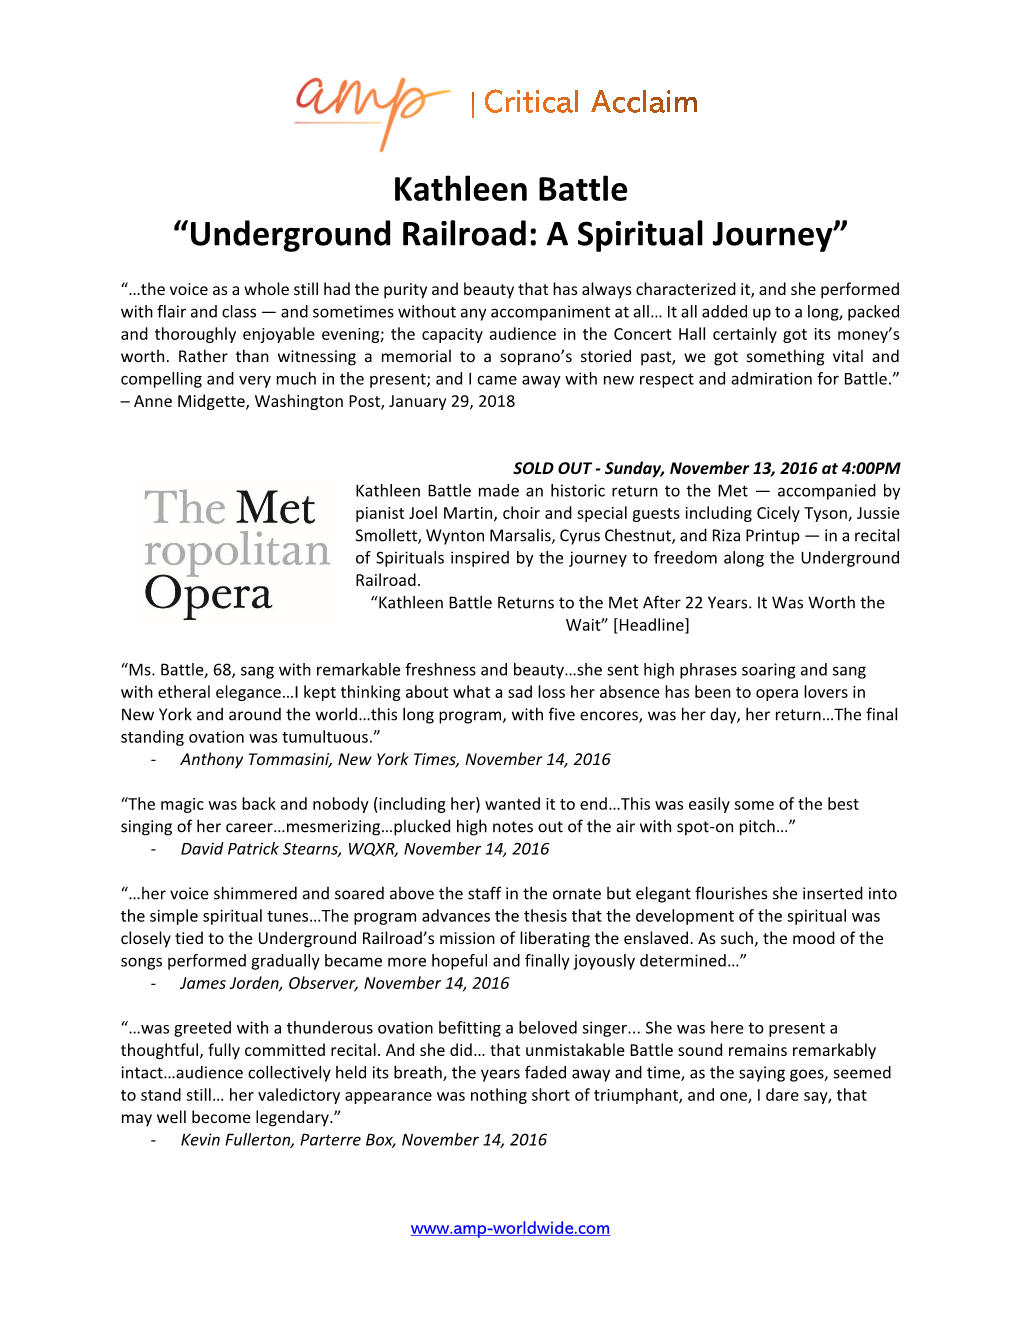 Kathleen Battle “Underground Railroad: a Spiritual Journey”